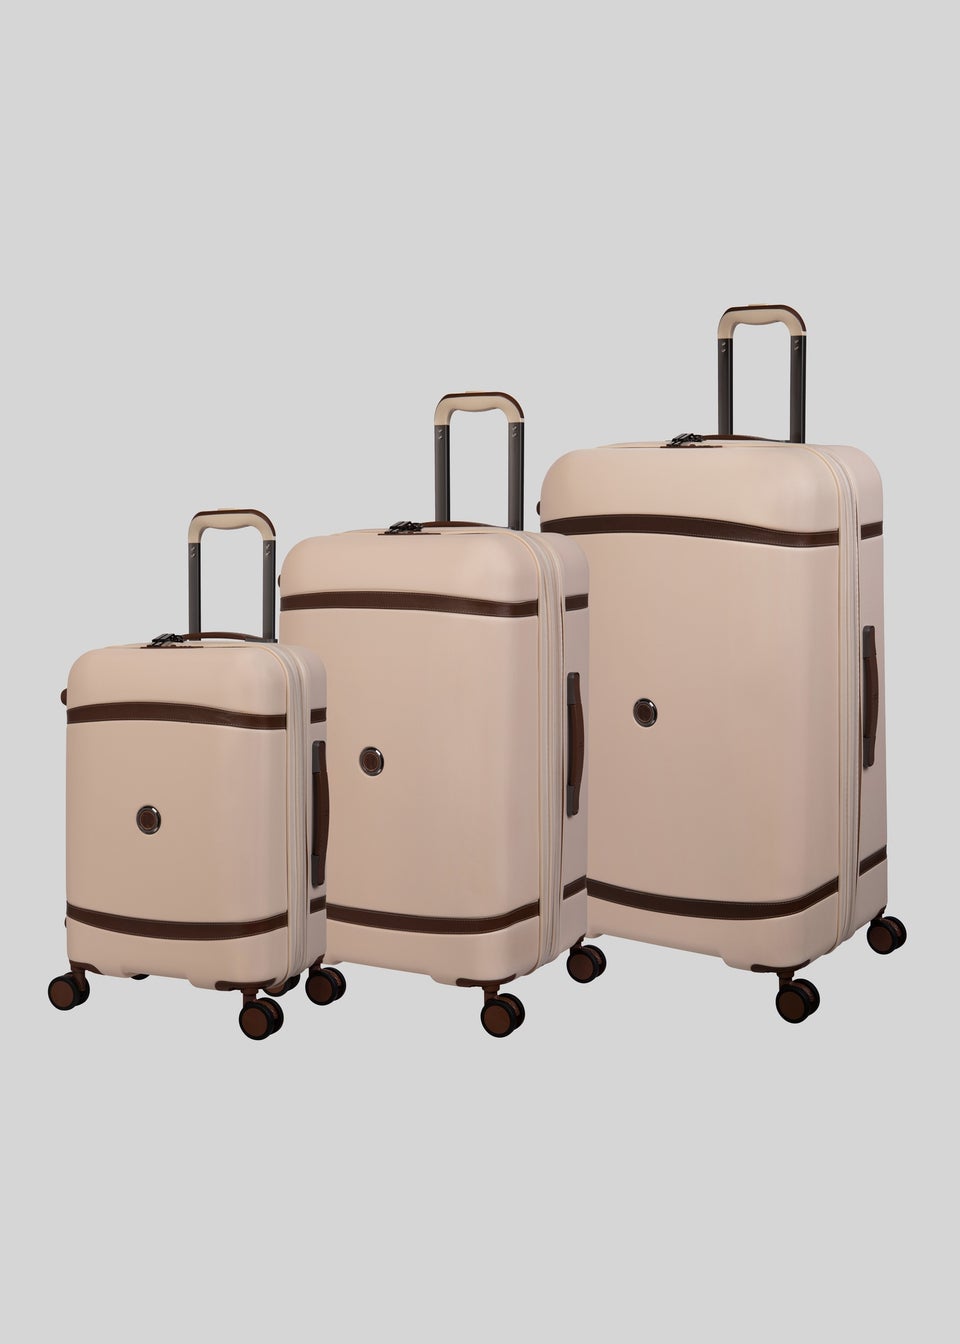 IT Luggage Cream Trunk Suitcase